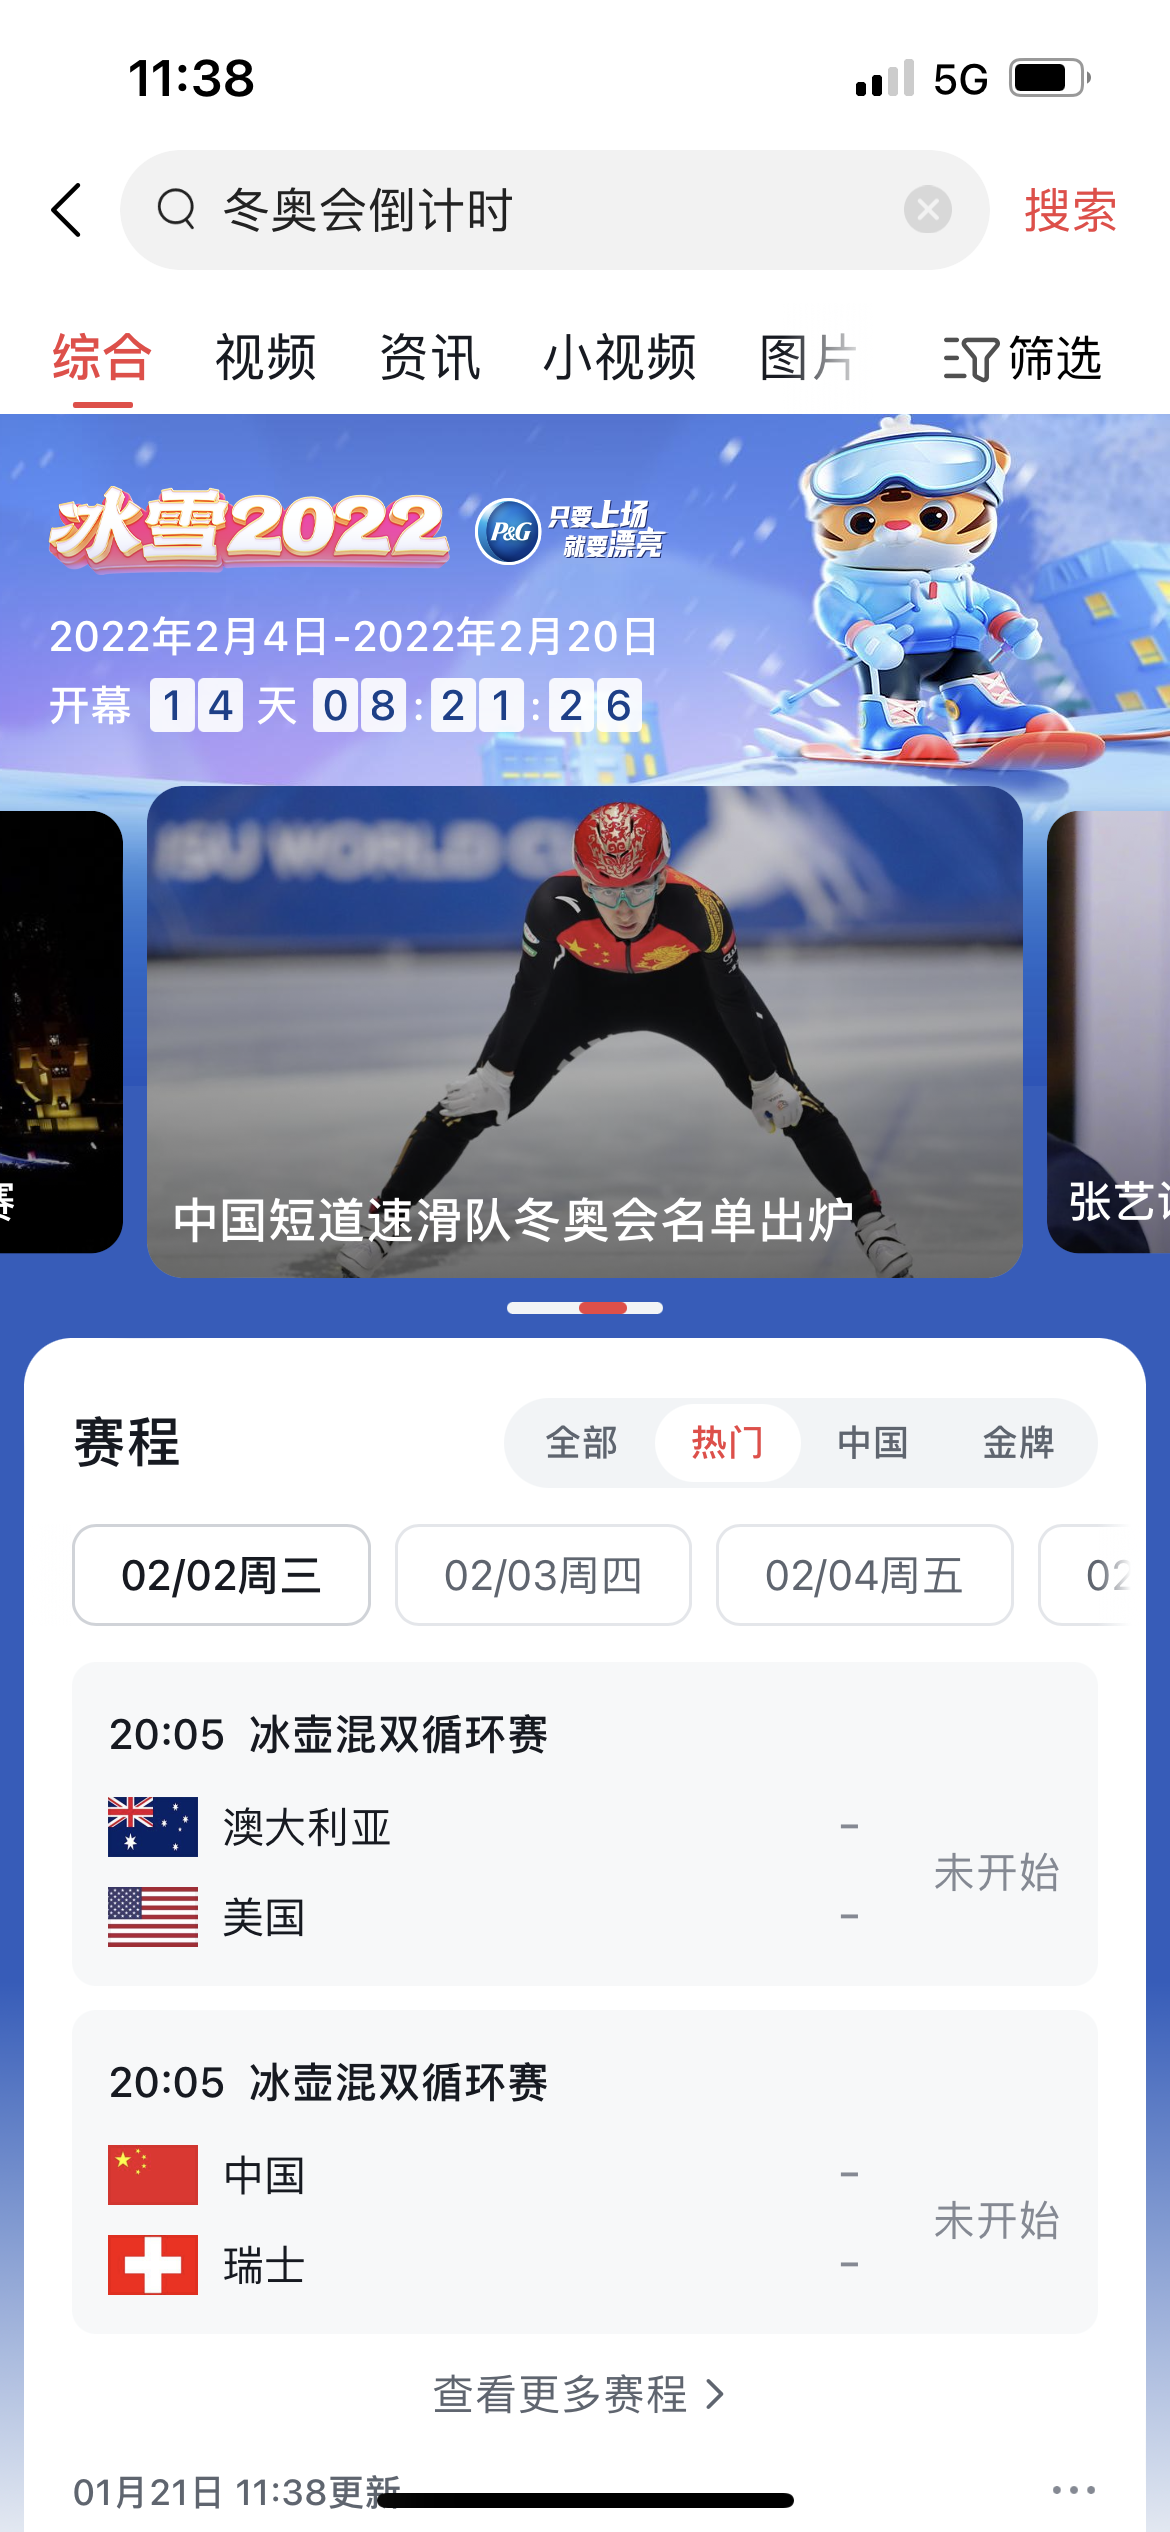 带领用户领略冰雪运动精彩，头条上线“赛事资讯”频道